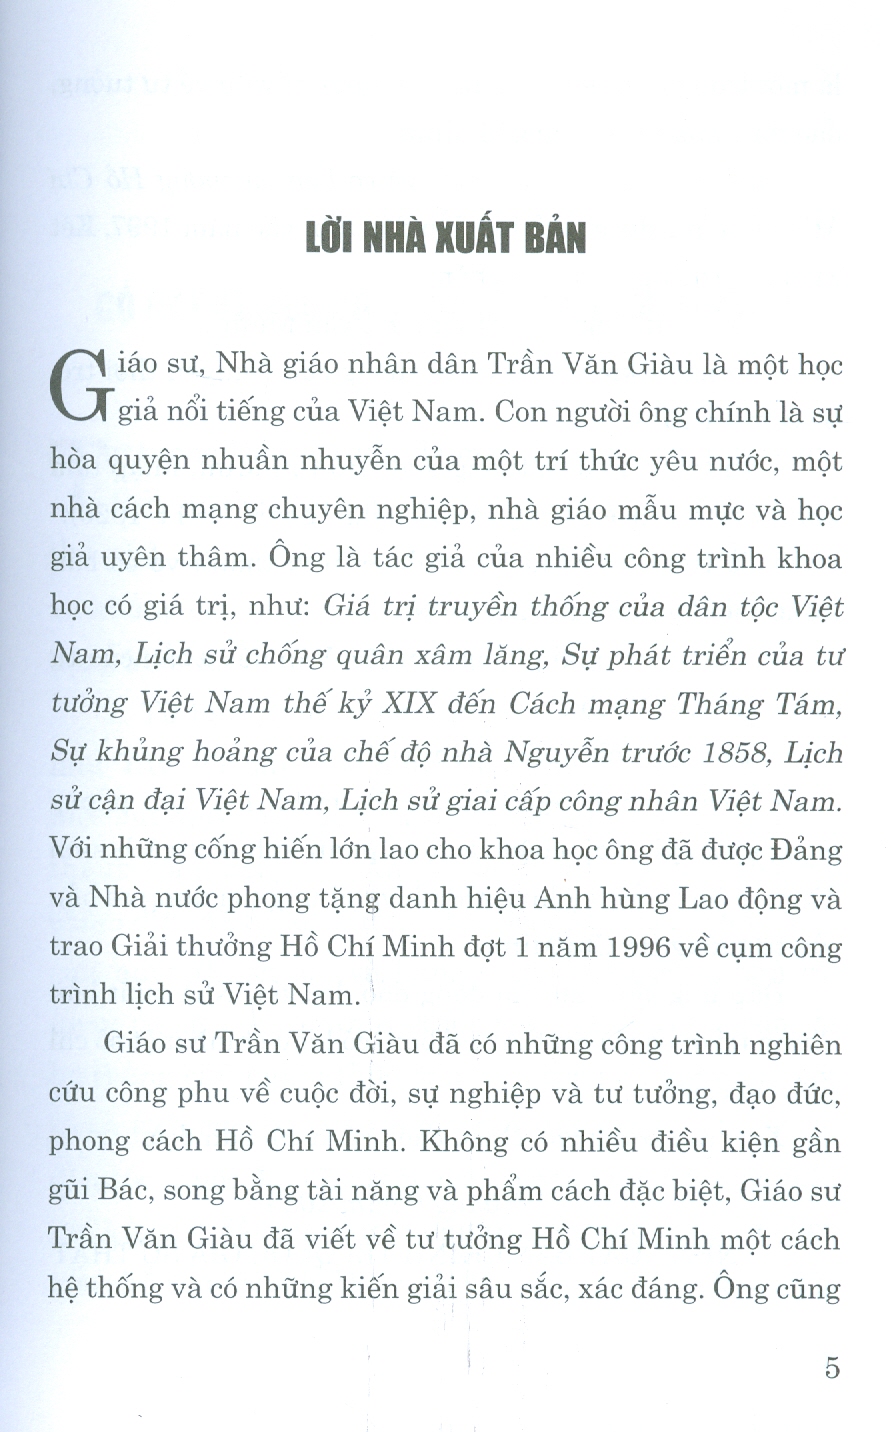 Sự Hình Thành Về Cơ Bản Tư Tưởng Hồ Chí Minh (Xuất bản lần thứ hai, có chỉnh sửa)